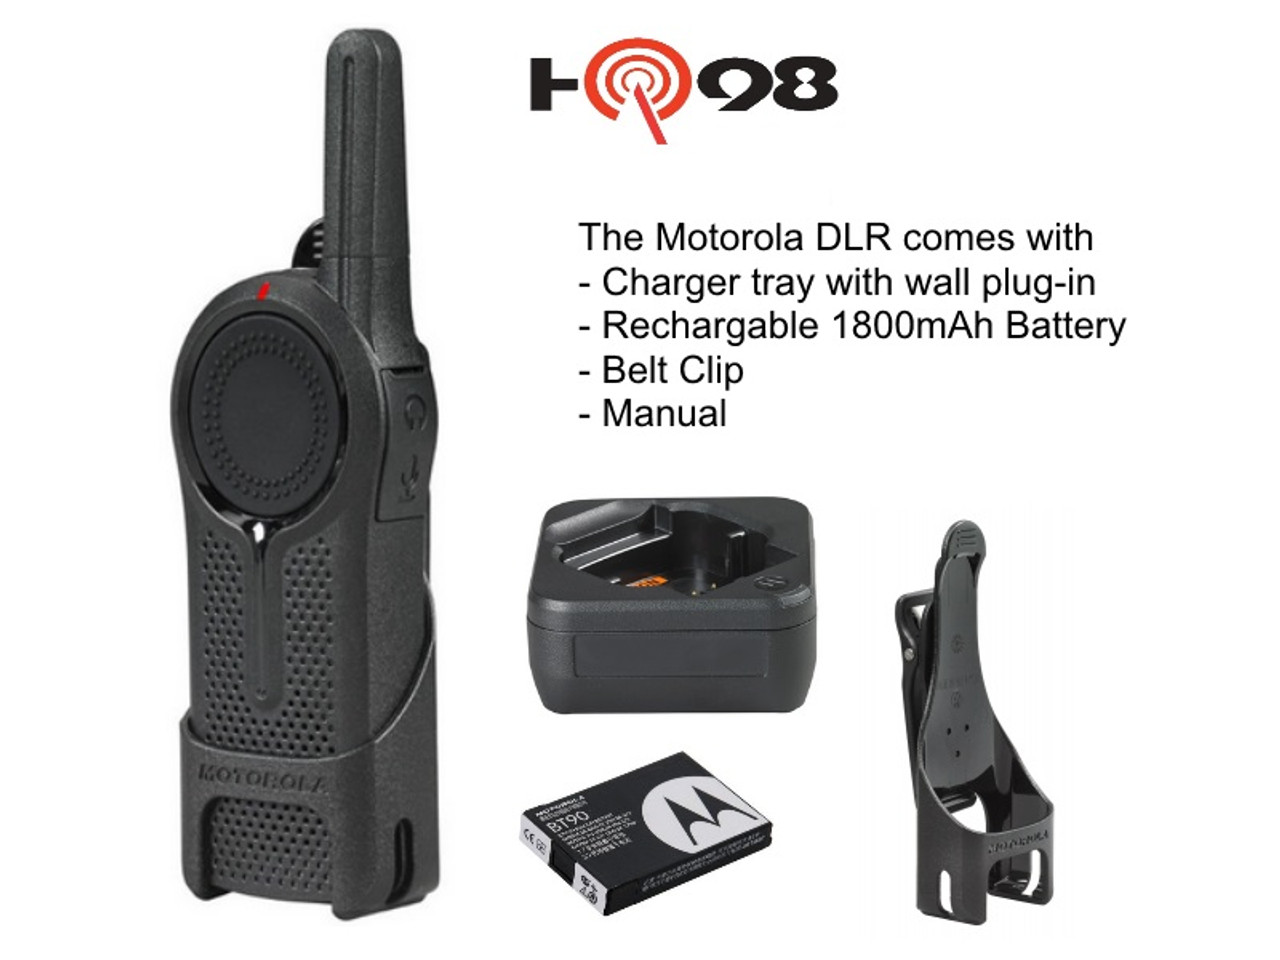 Pack of Motorola DLR1060 Walkie Talkie Radios by Motorola